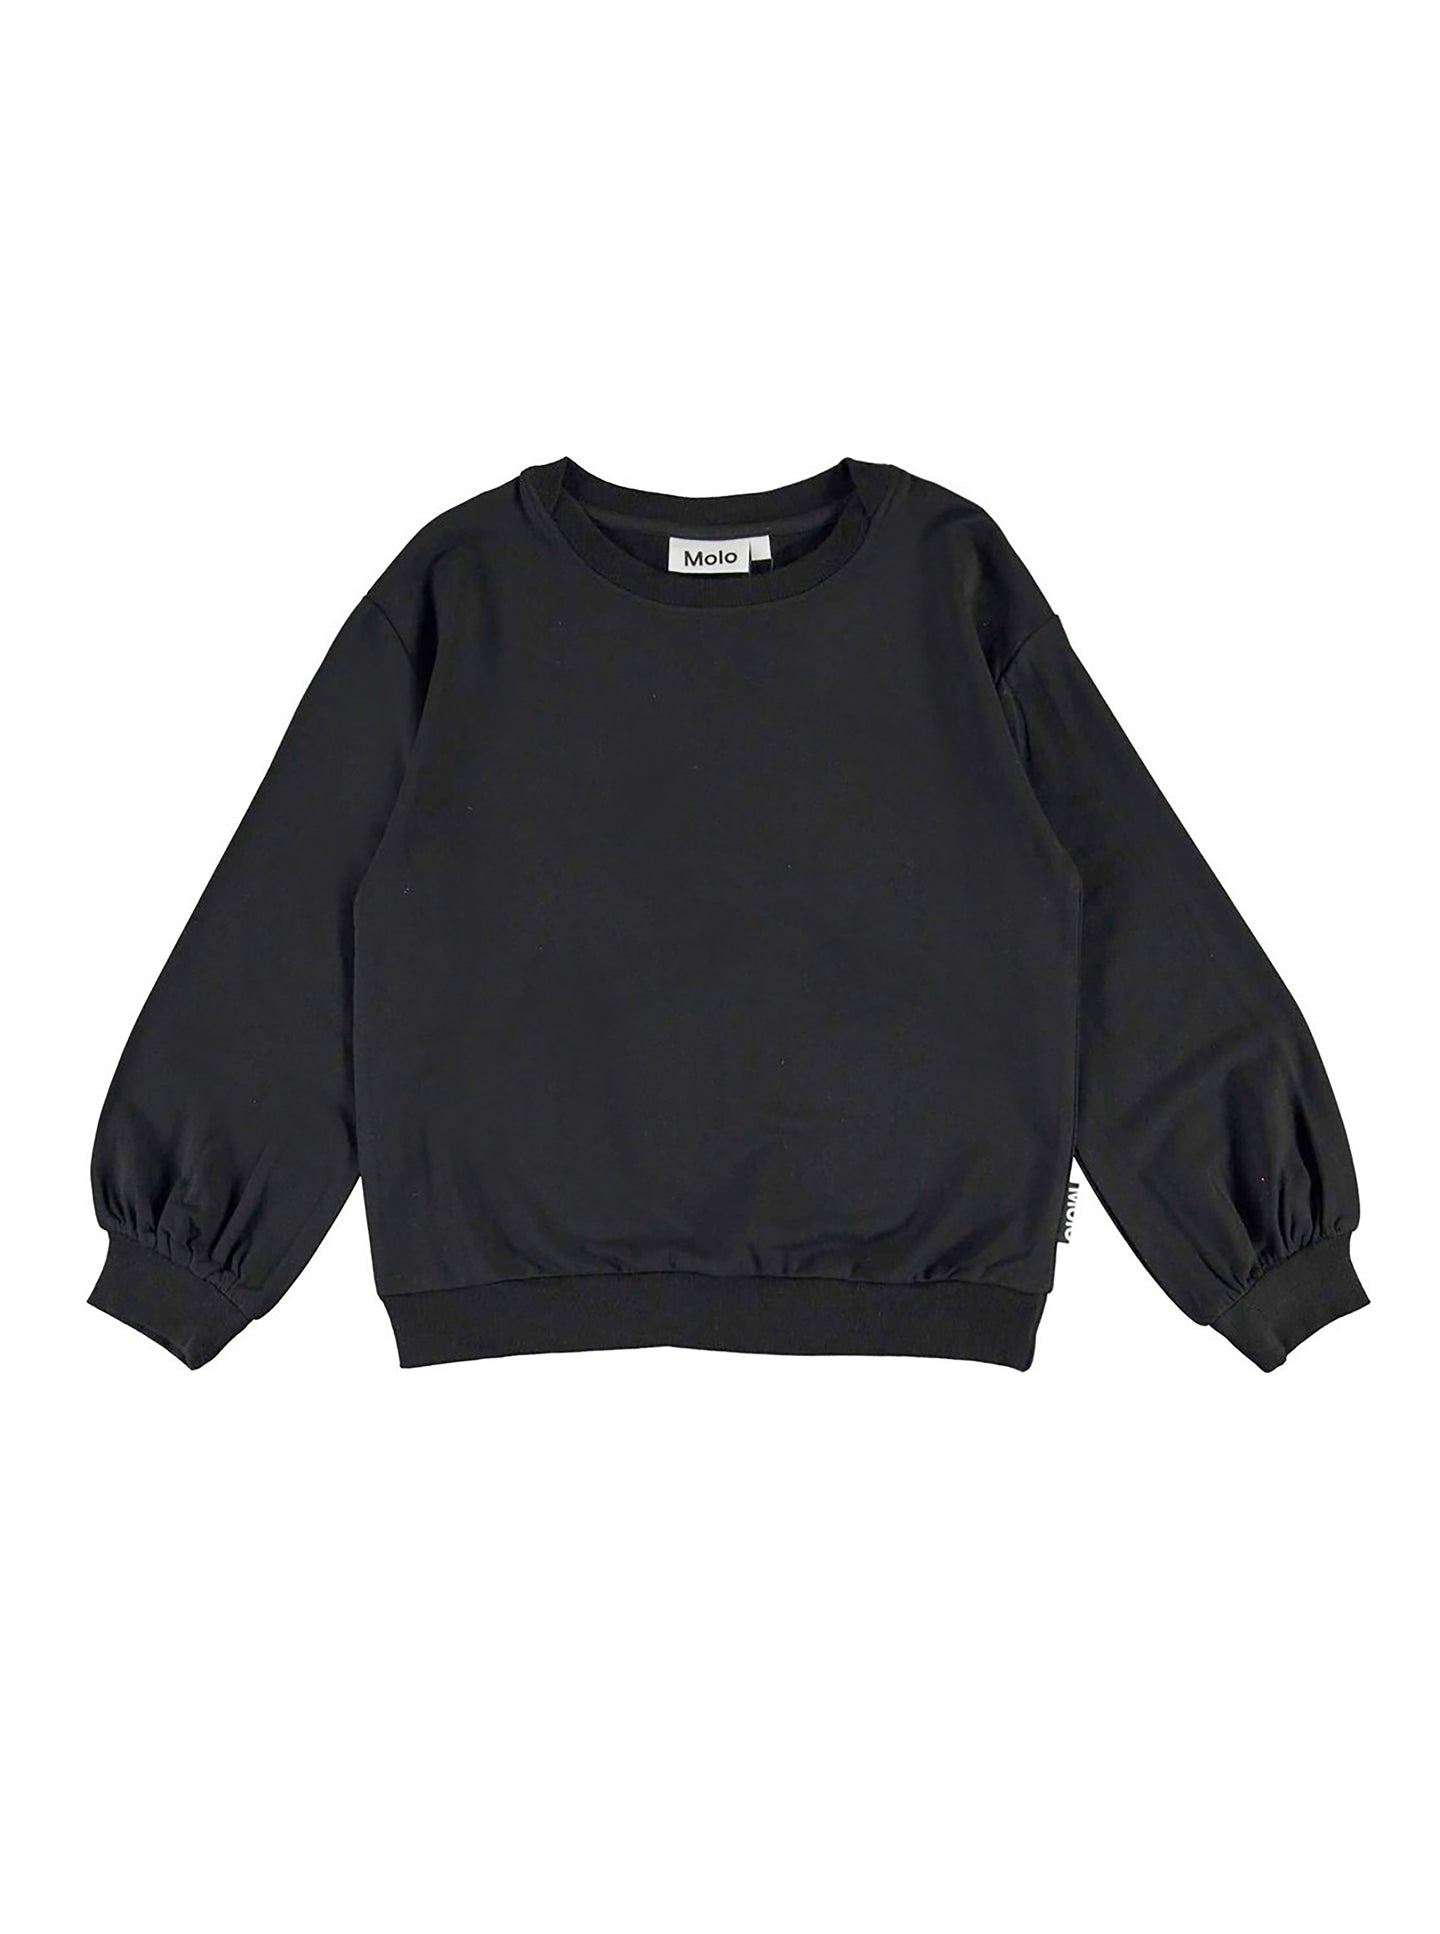 [6y] MOLO Black Sweatshirt - Ryba